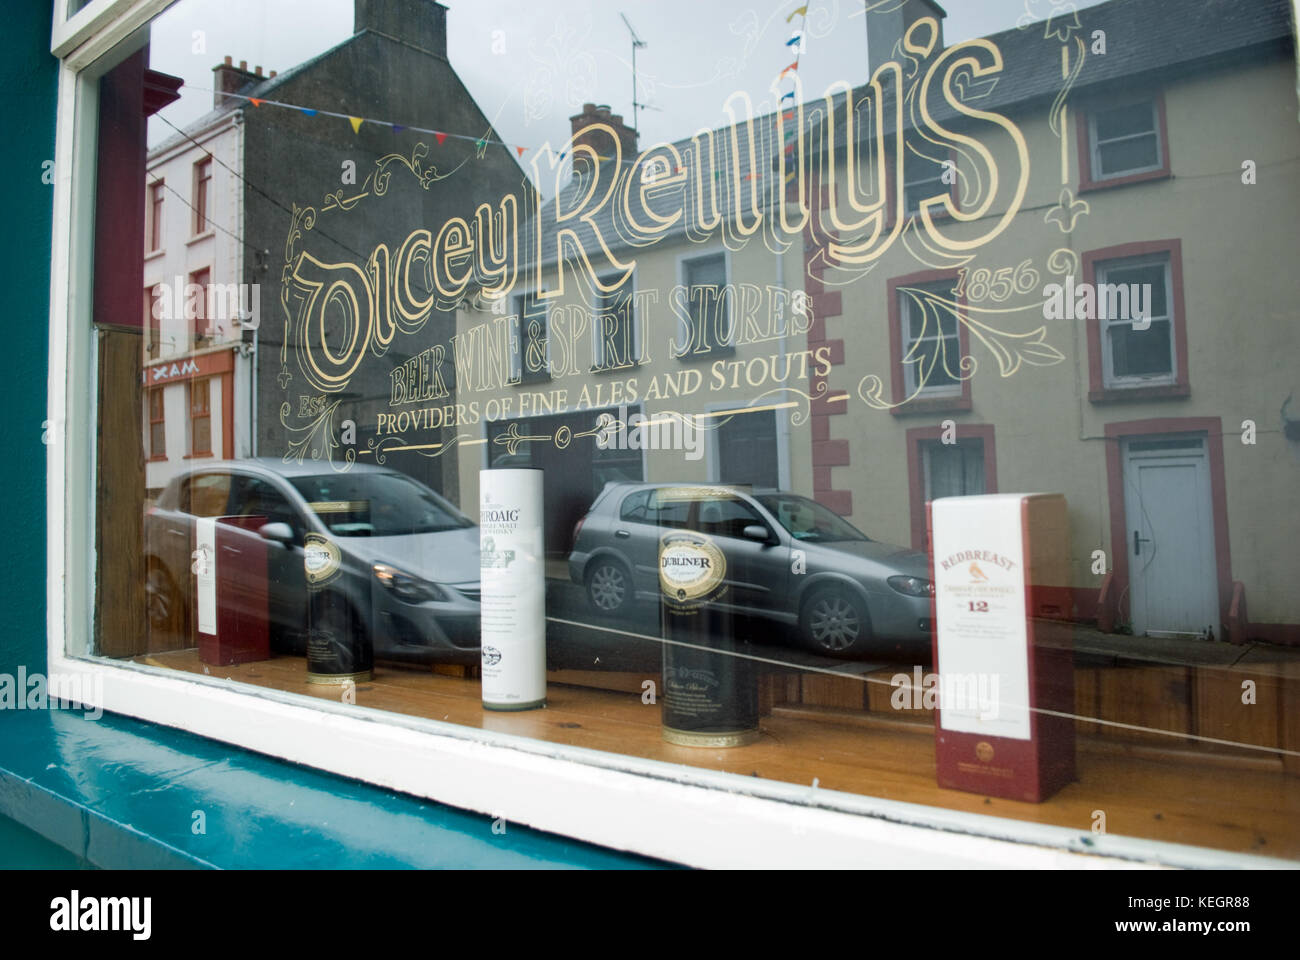 Berühmte Dicey Reilly's Pub, Brauerei und Lizenz in ballyshannon, County Donegal Stockfoto